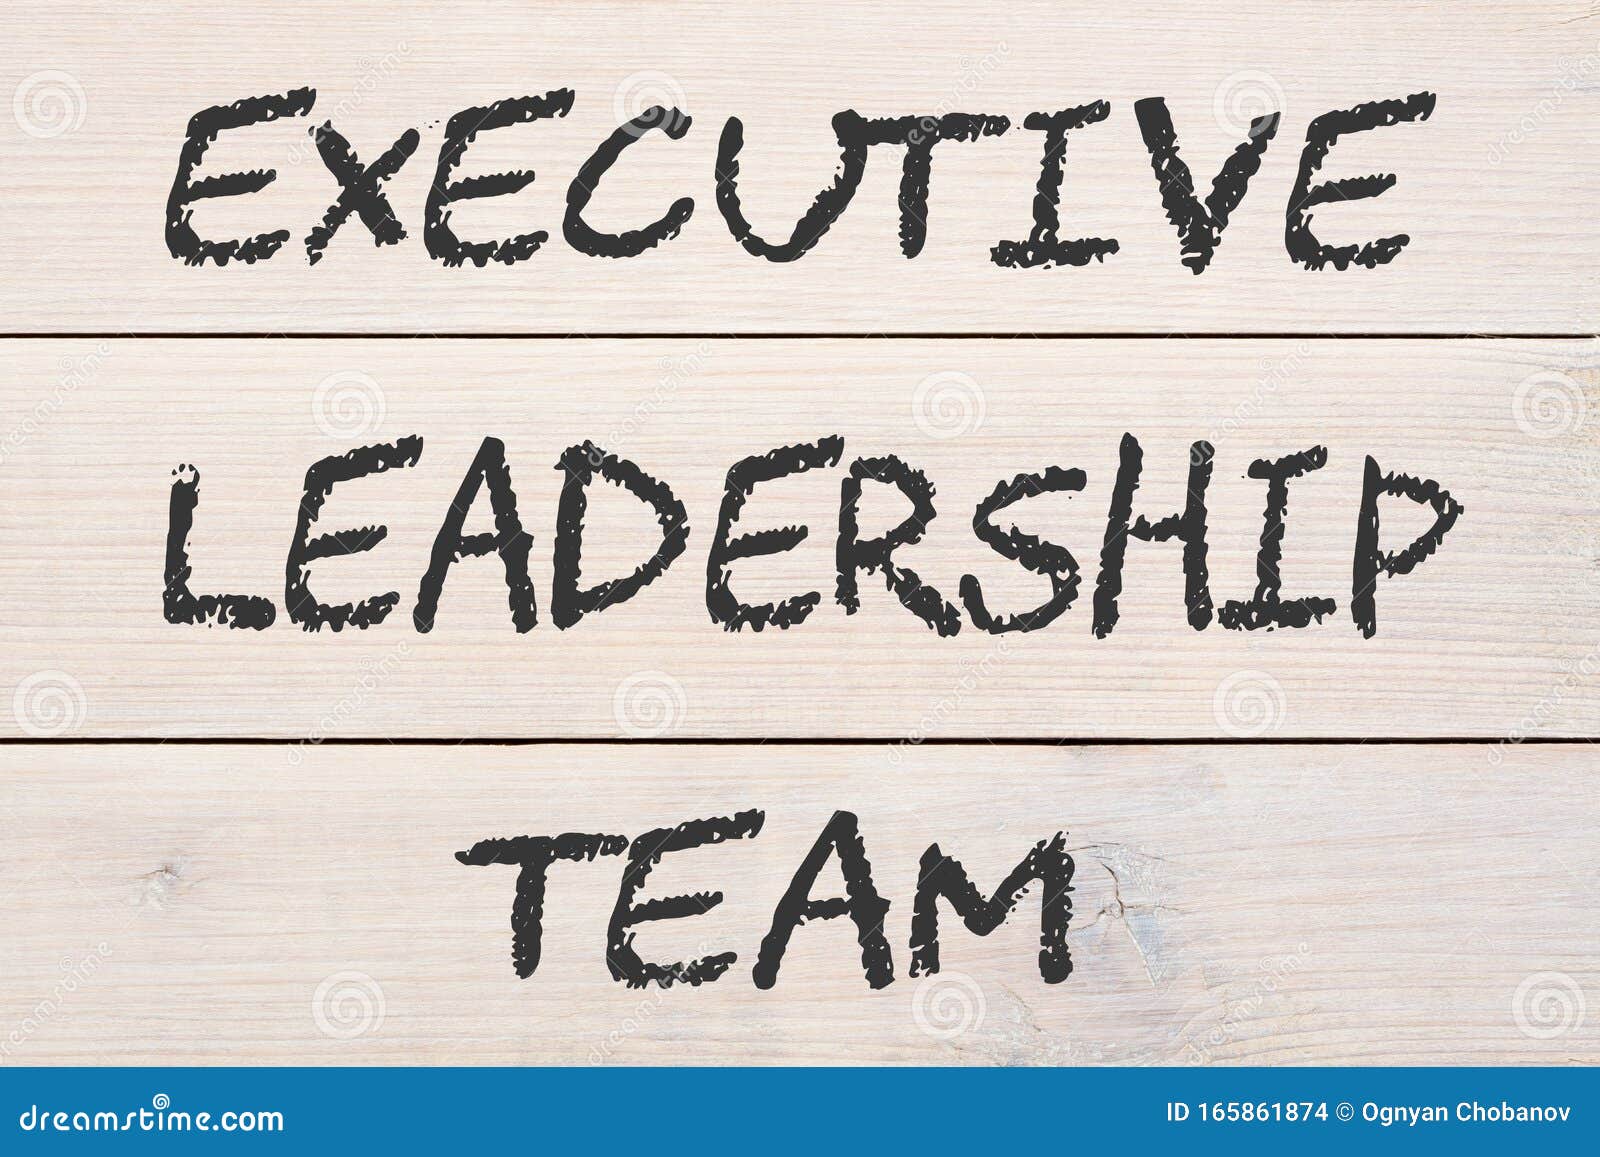 executive leadership team